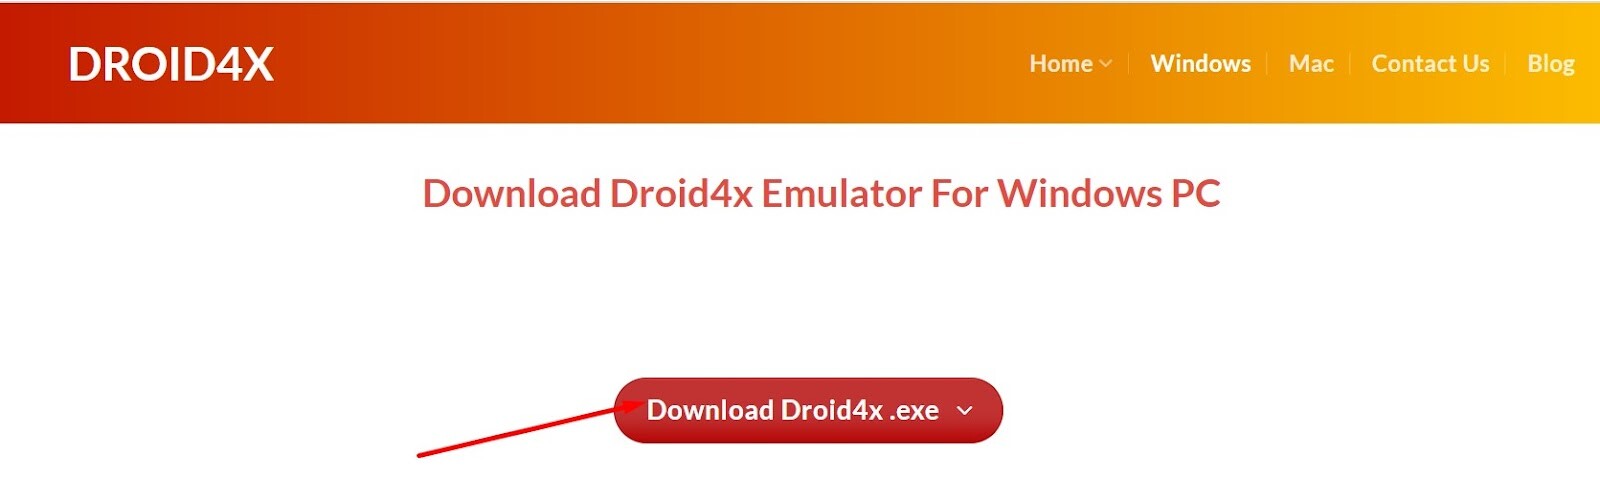 Bấm vào Download Droid4x.exe để tiếp tục cài app Win79 trên Laptop / Máy tính / PC bằng Droid4X